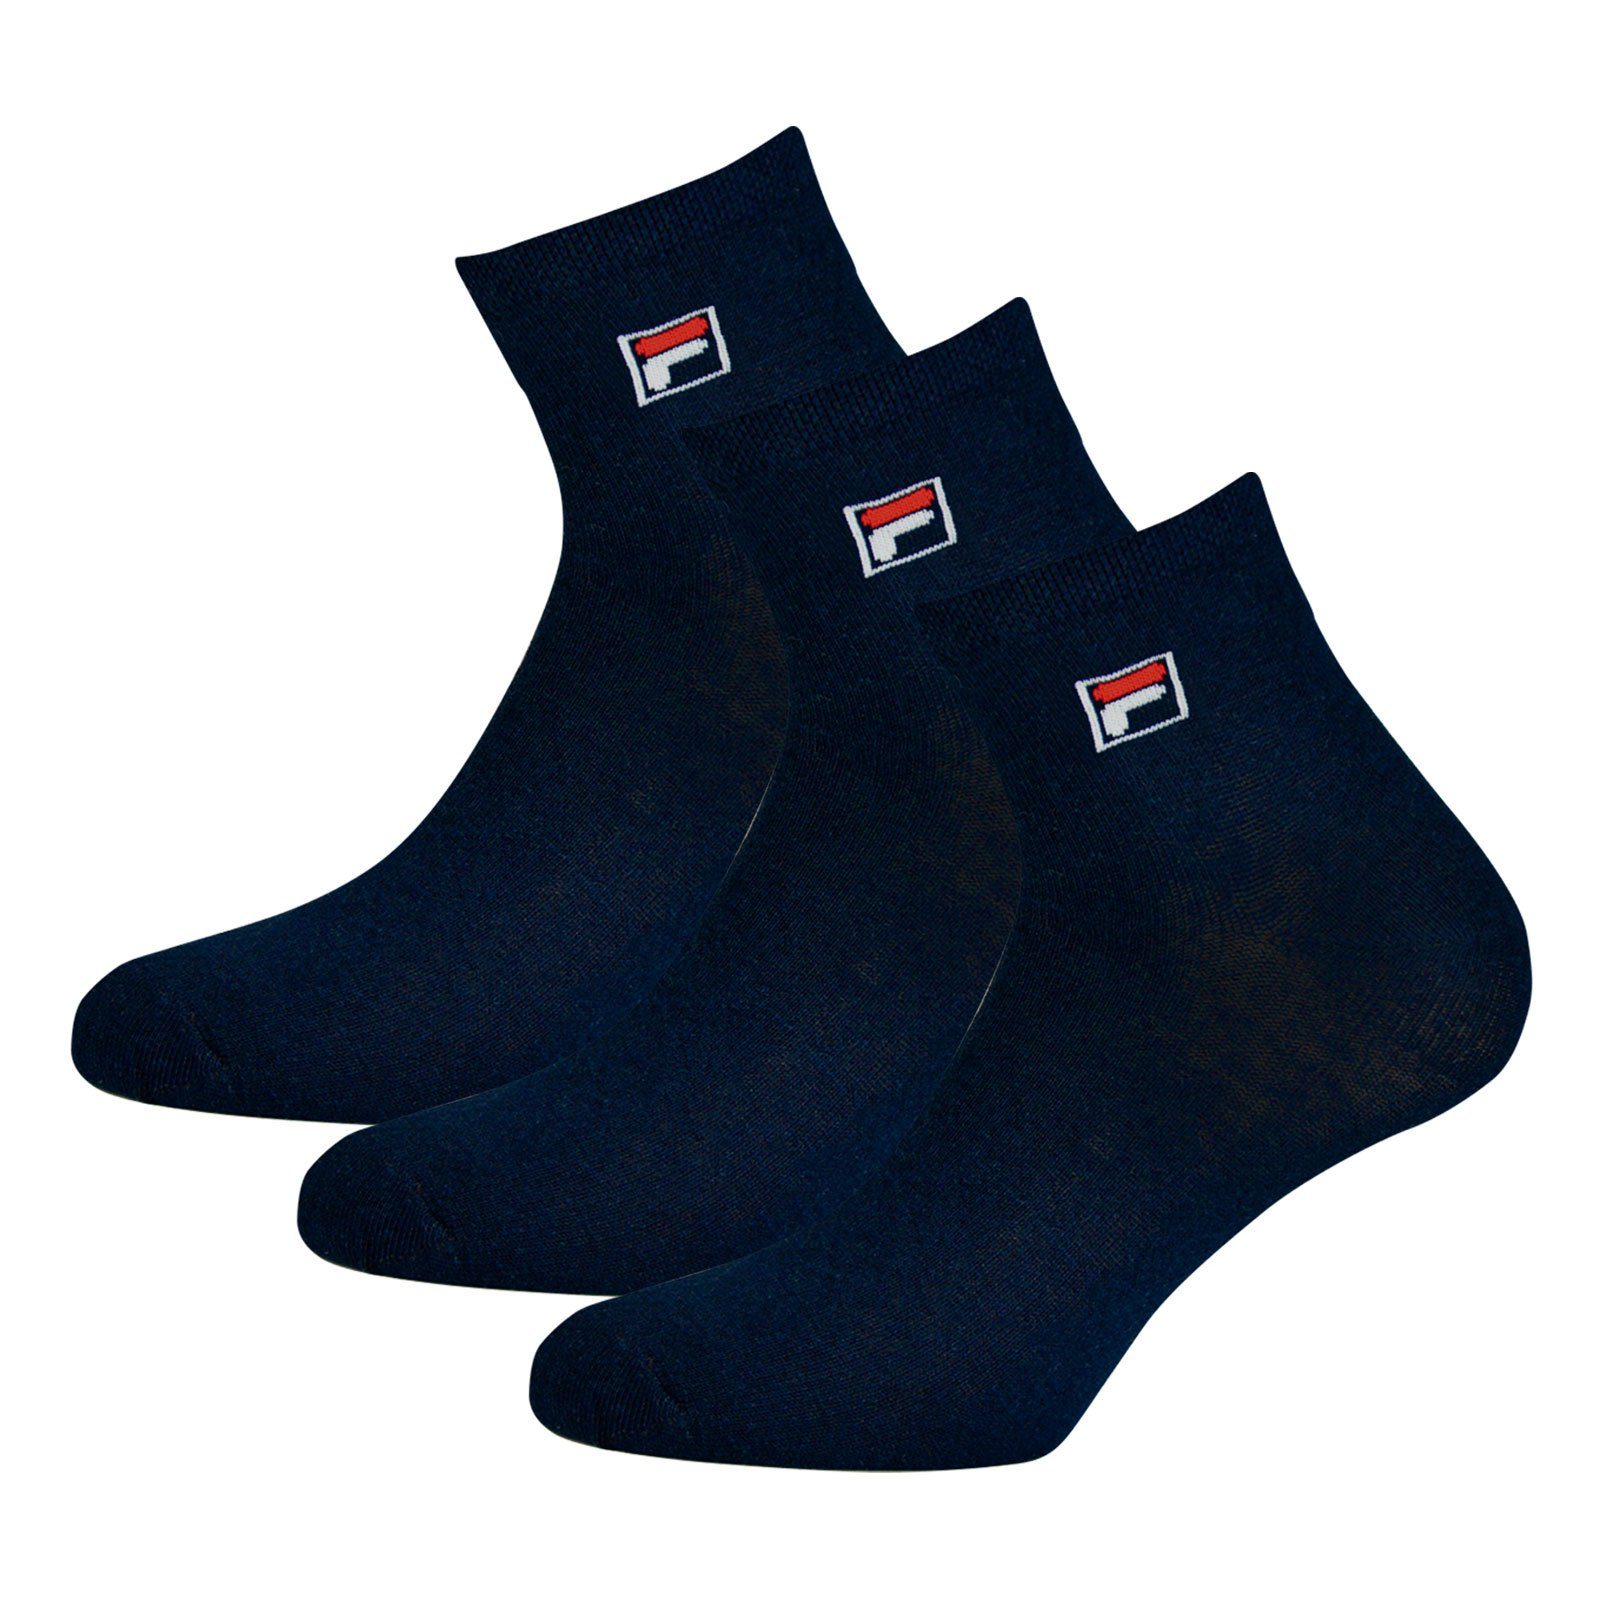 Fila Quarter Piquebund 321 mit Sportsocken elastischem Socken (18-Paar) navy